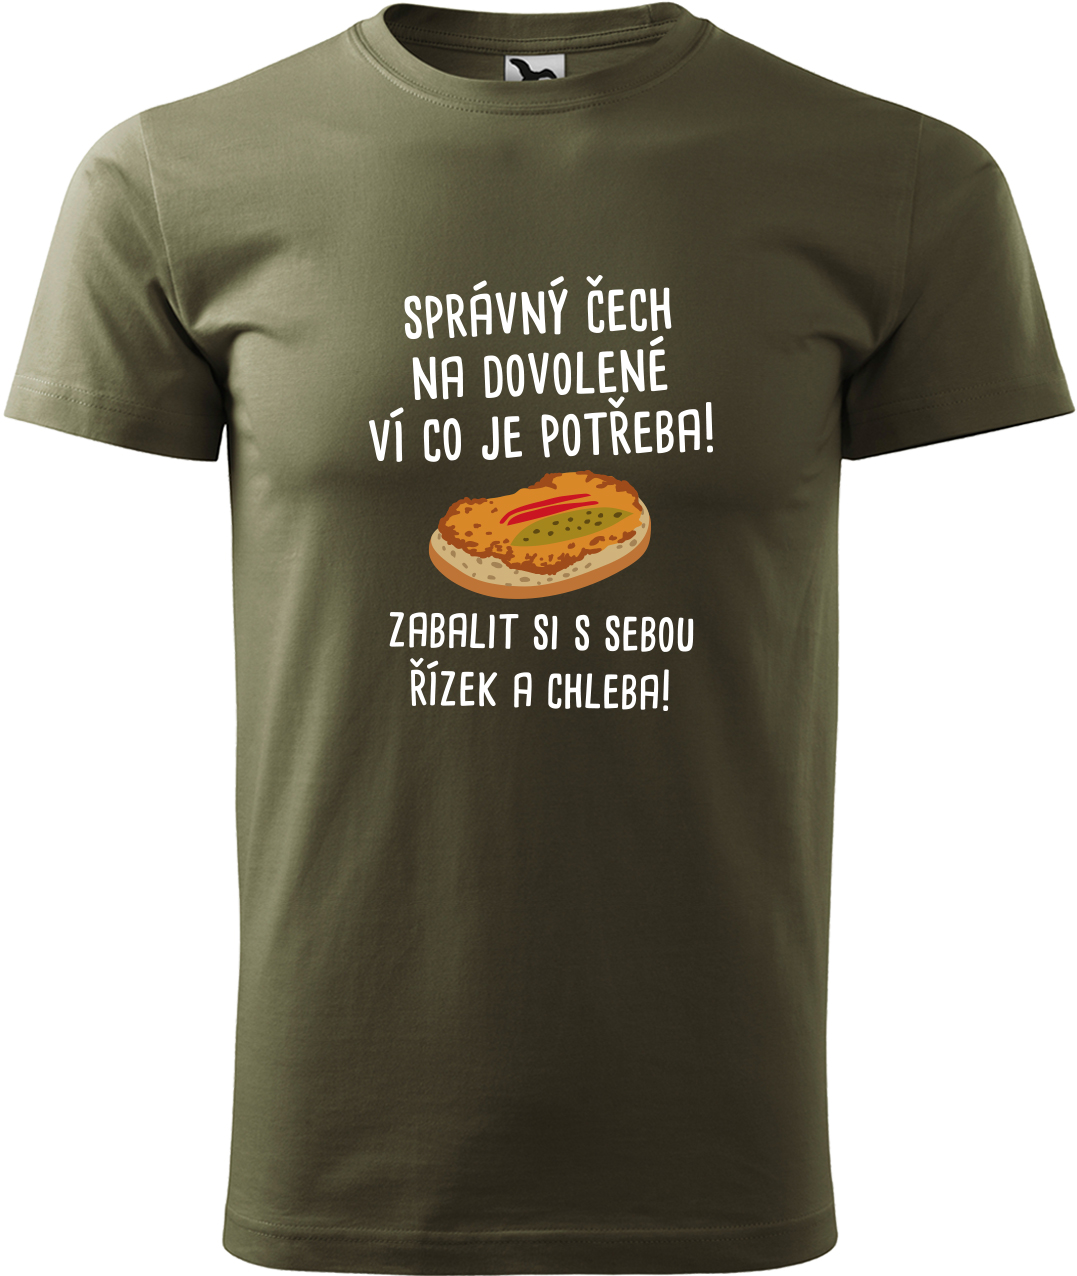 Pánské cestovatelské tričko - Správný Čech na dovolené, ví co je potřeba! Velikost: XL, Barva: Military (69), Střih: pánský